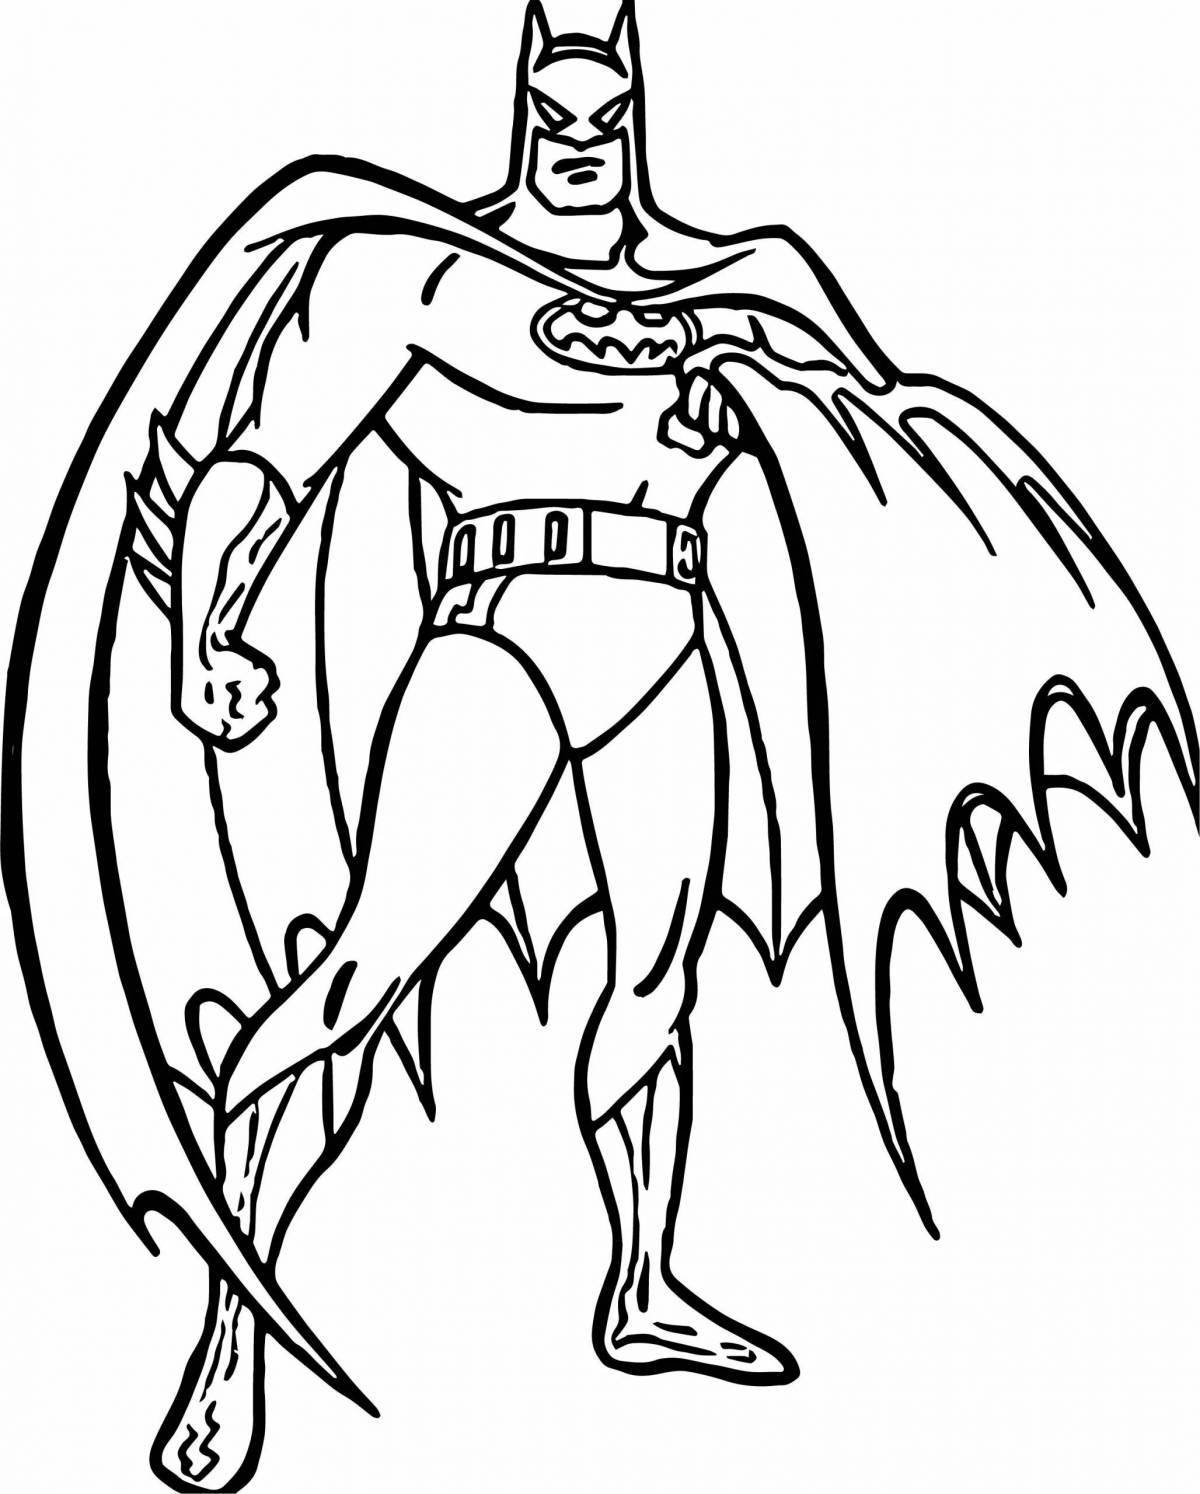 Раскраска Зов Бэтмена, скачать и распечатать раскраску раздела Бэтмен